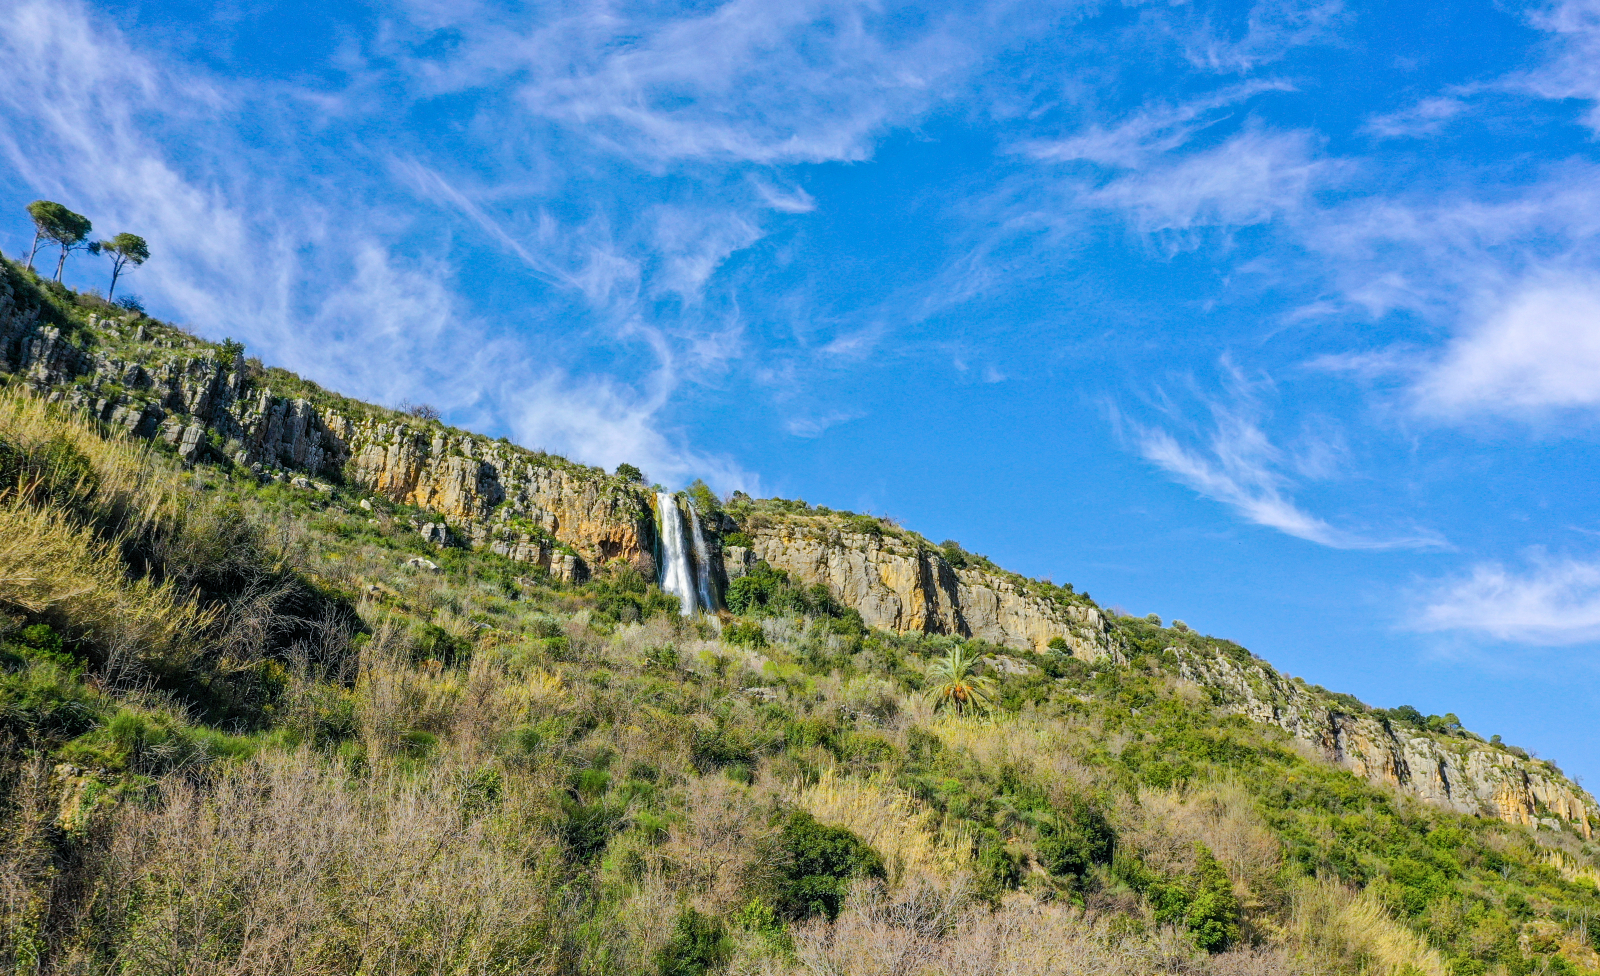 Rechmaya Waterfall